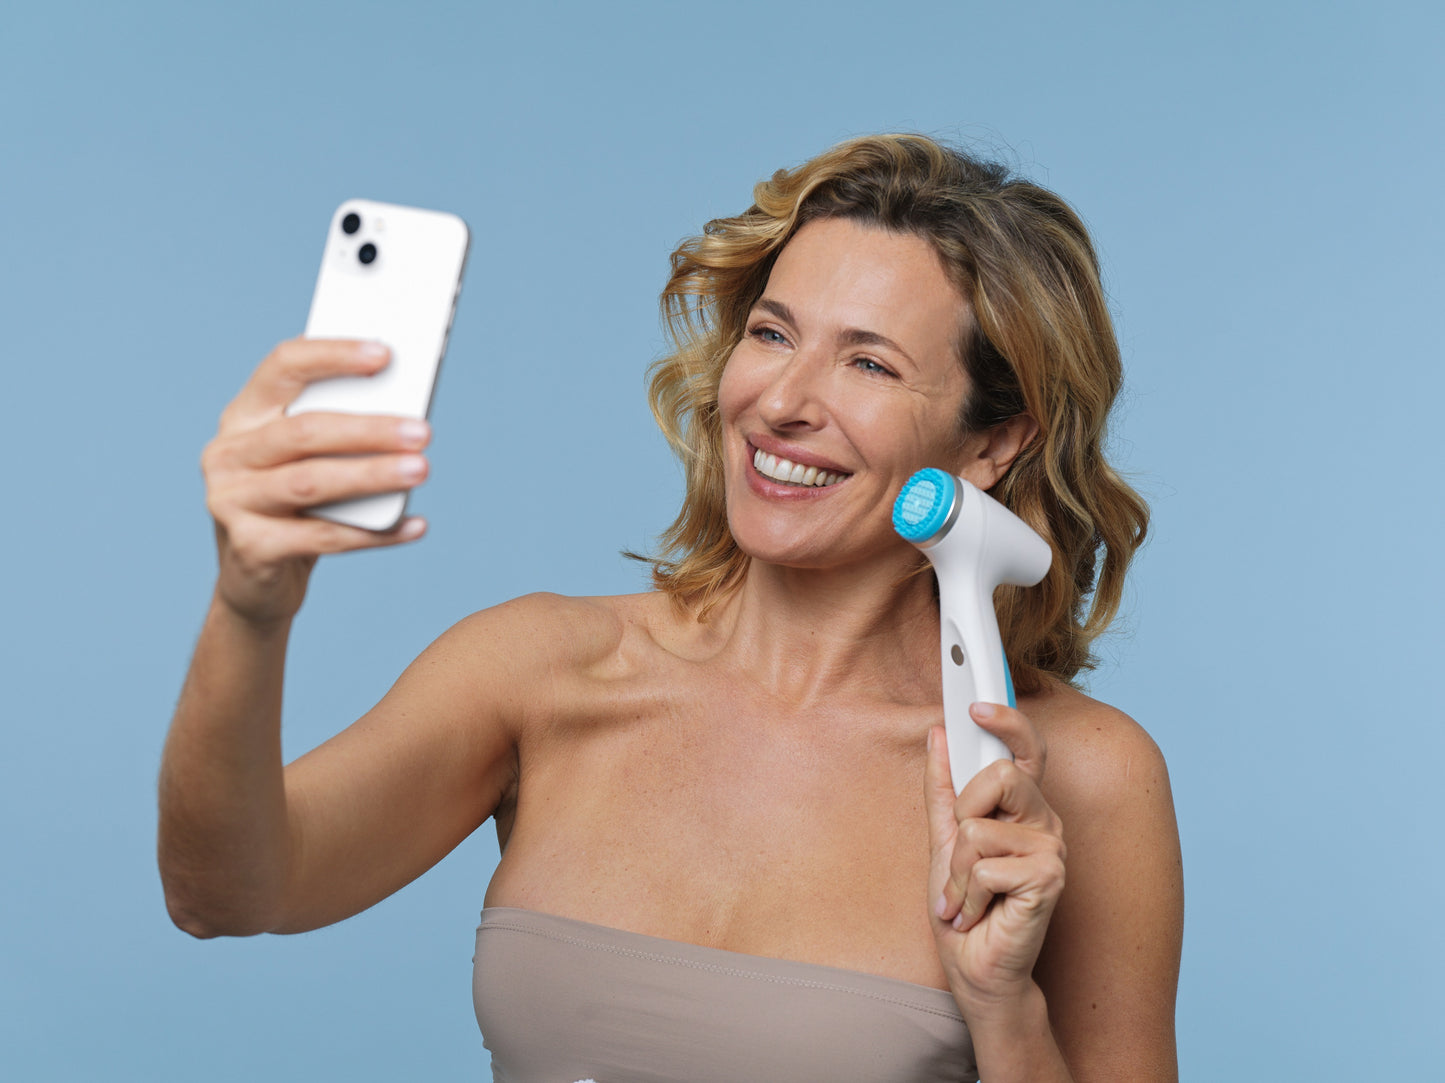 La cliente tient LumiSpa iO et téléphone portable - LumiSpa iO tu peux communiquer via Blutetooth avec la Nu Skin Vera sur ton téléphone portable pour te permettre d'atteindre tes objectifs de soins grâce à une application intelligente. IoT-(Internet des objets).